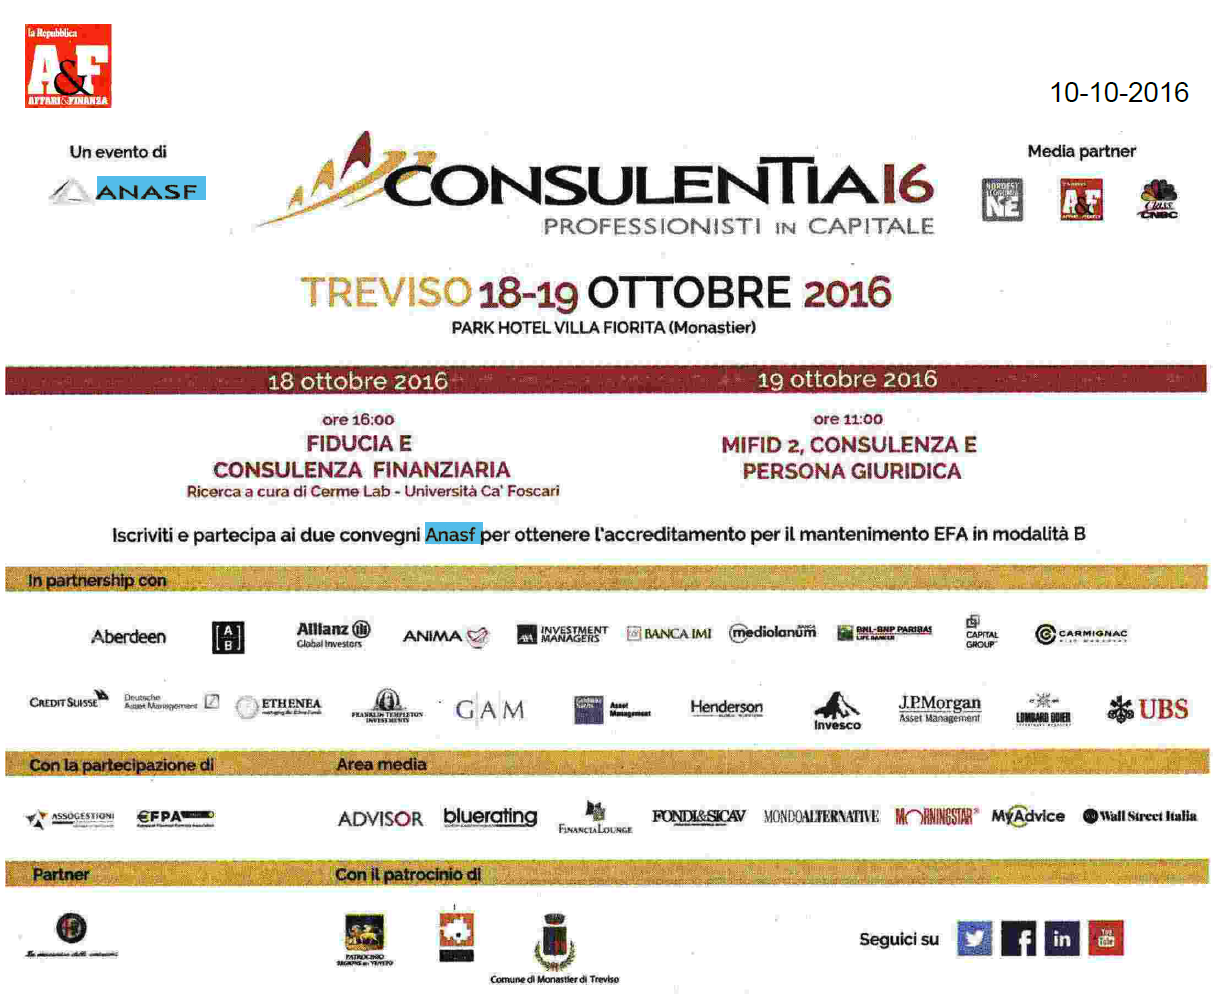 ConsulenTia16 Treviso è su Affari&Finanza